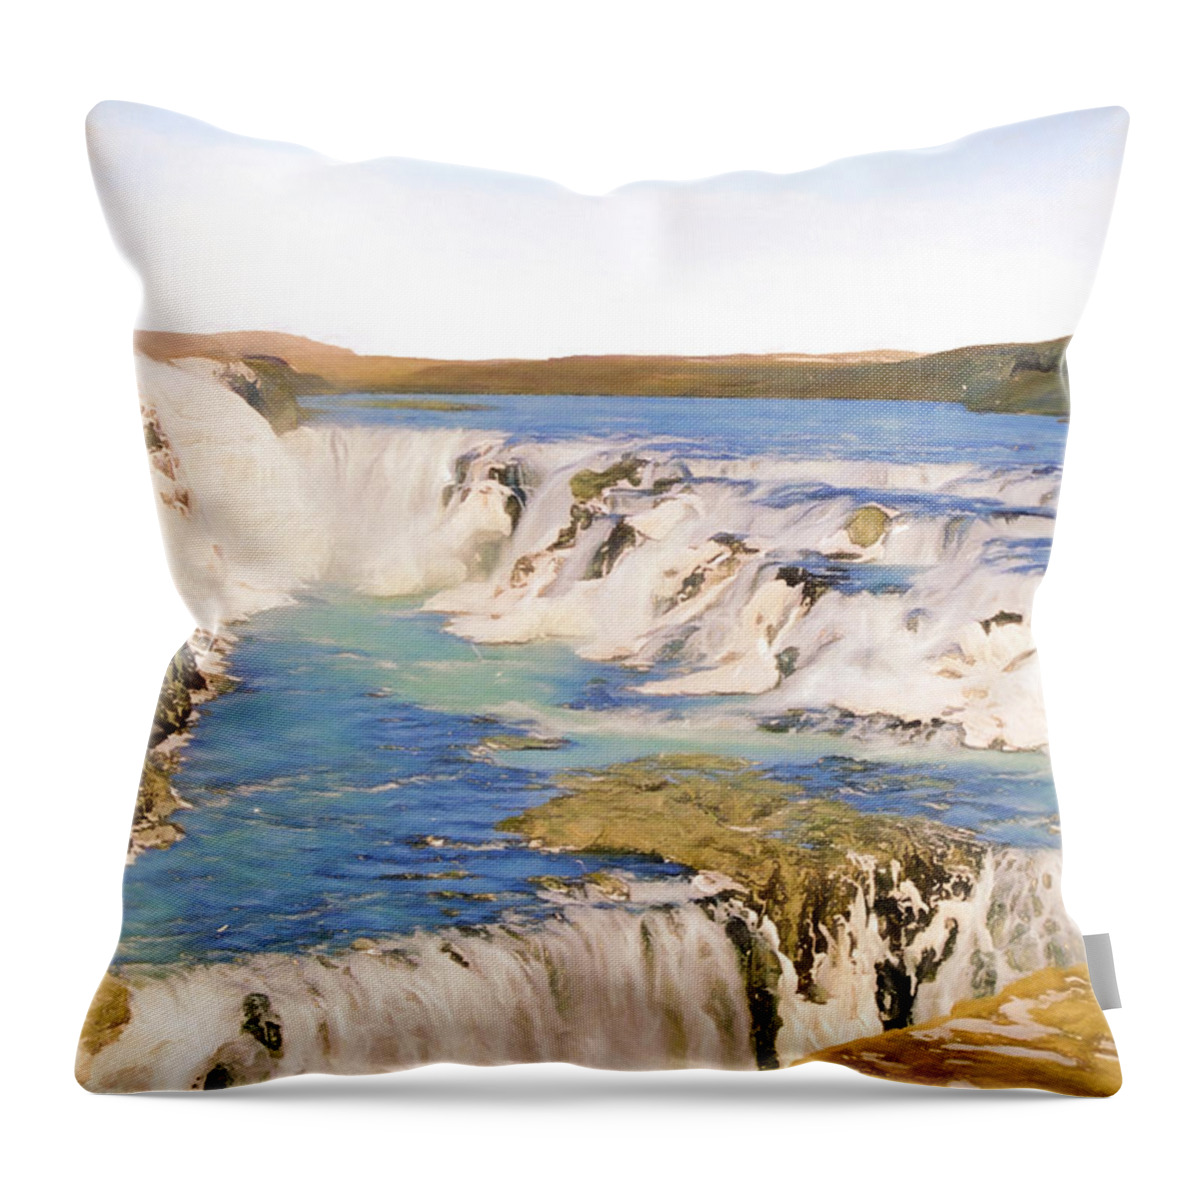 Europe Throw Pillow featuring the digital art Gullfoss Waterfalls Pastel 2 by Roy Pedersen